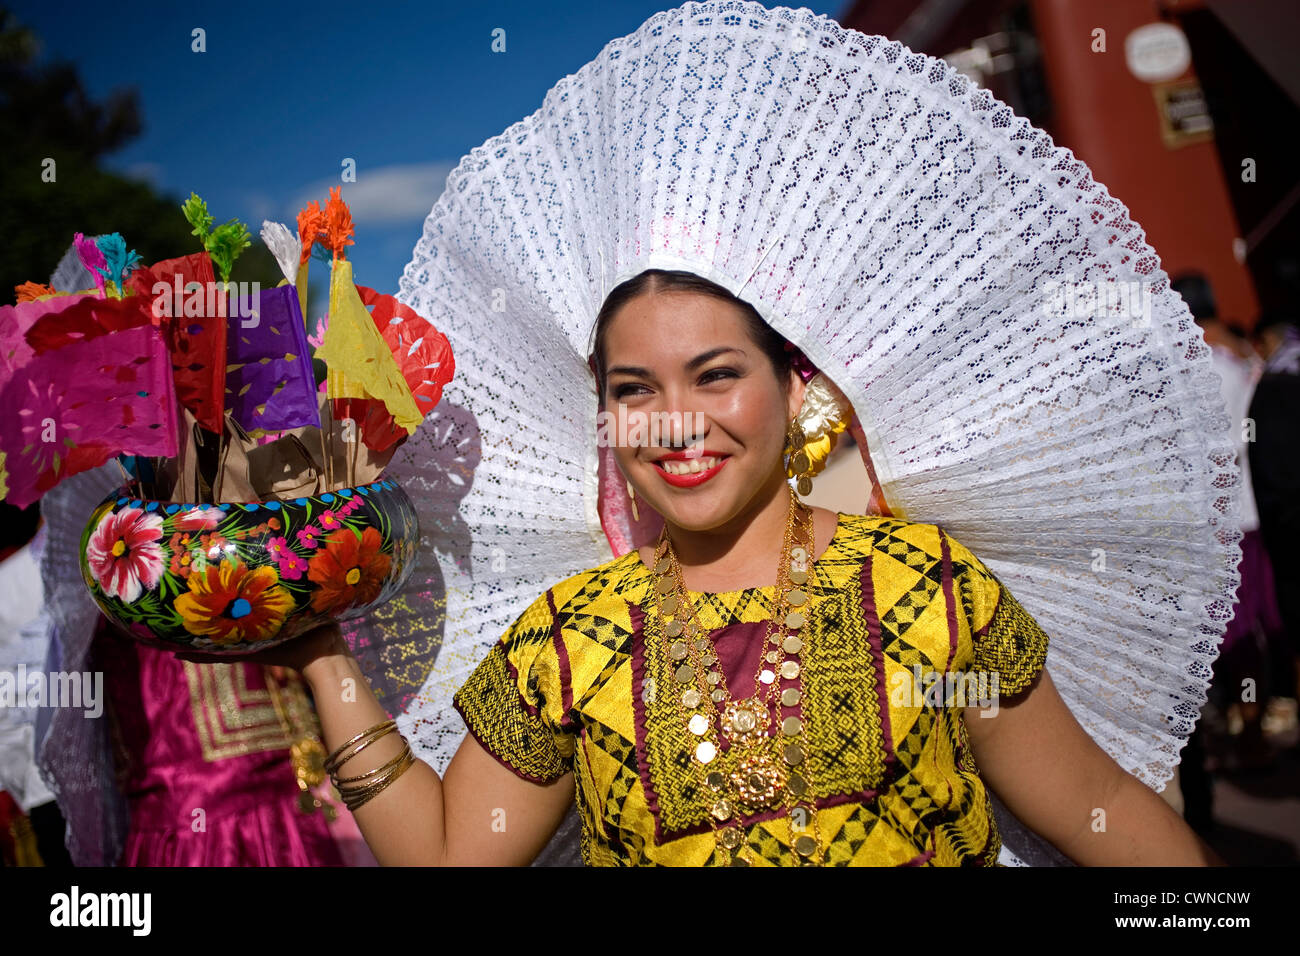 A Tehuana dancer smiles during the Guelaguetza parade in Oaxaca, Mexico Stock Photo